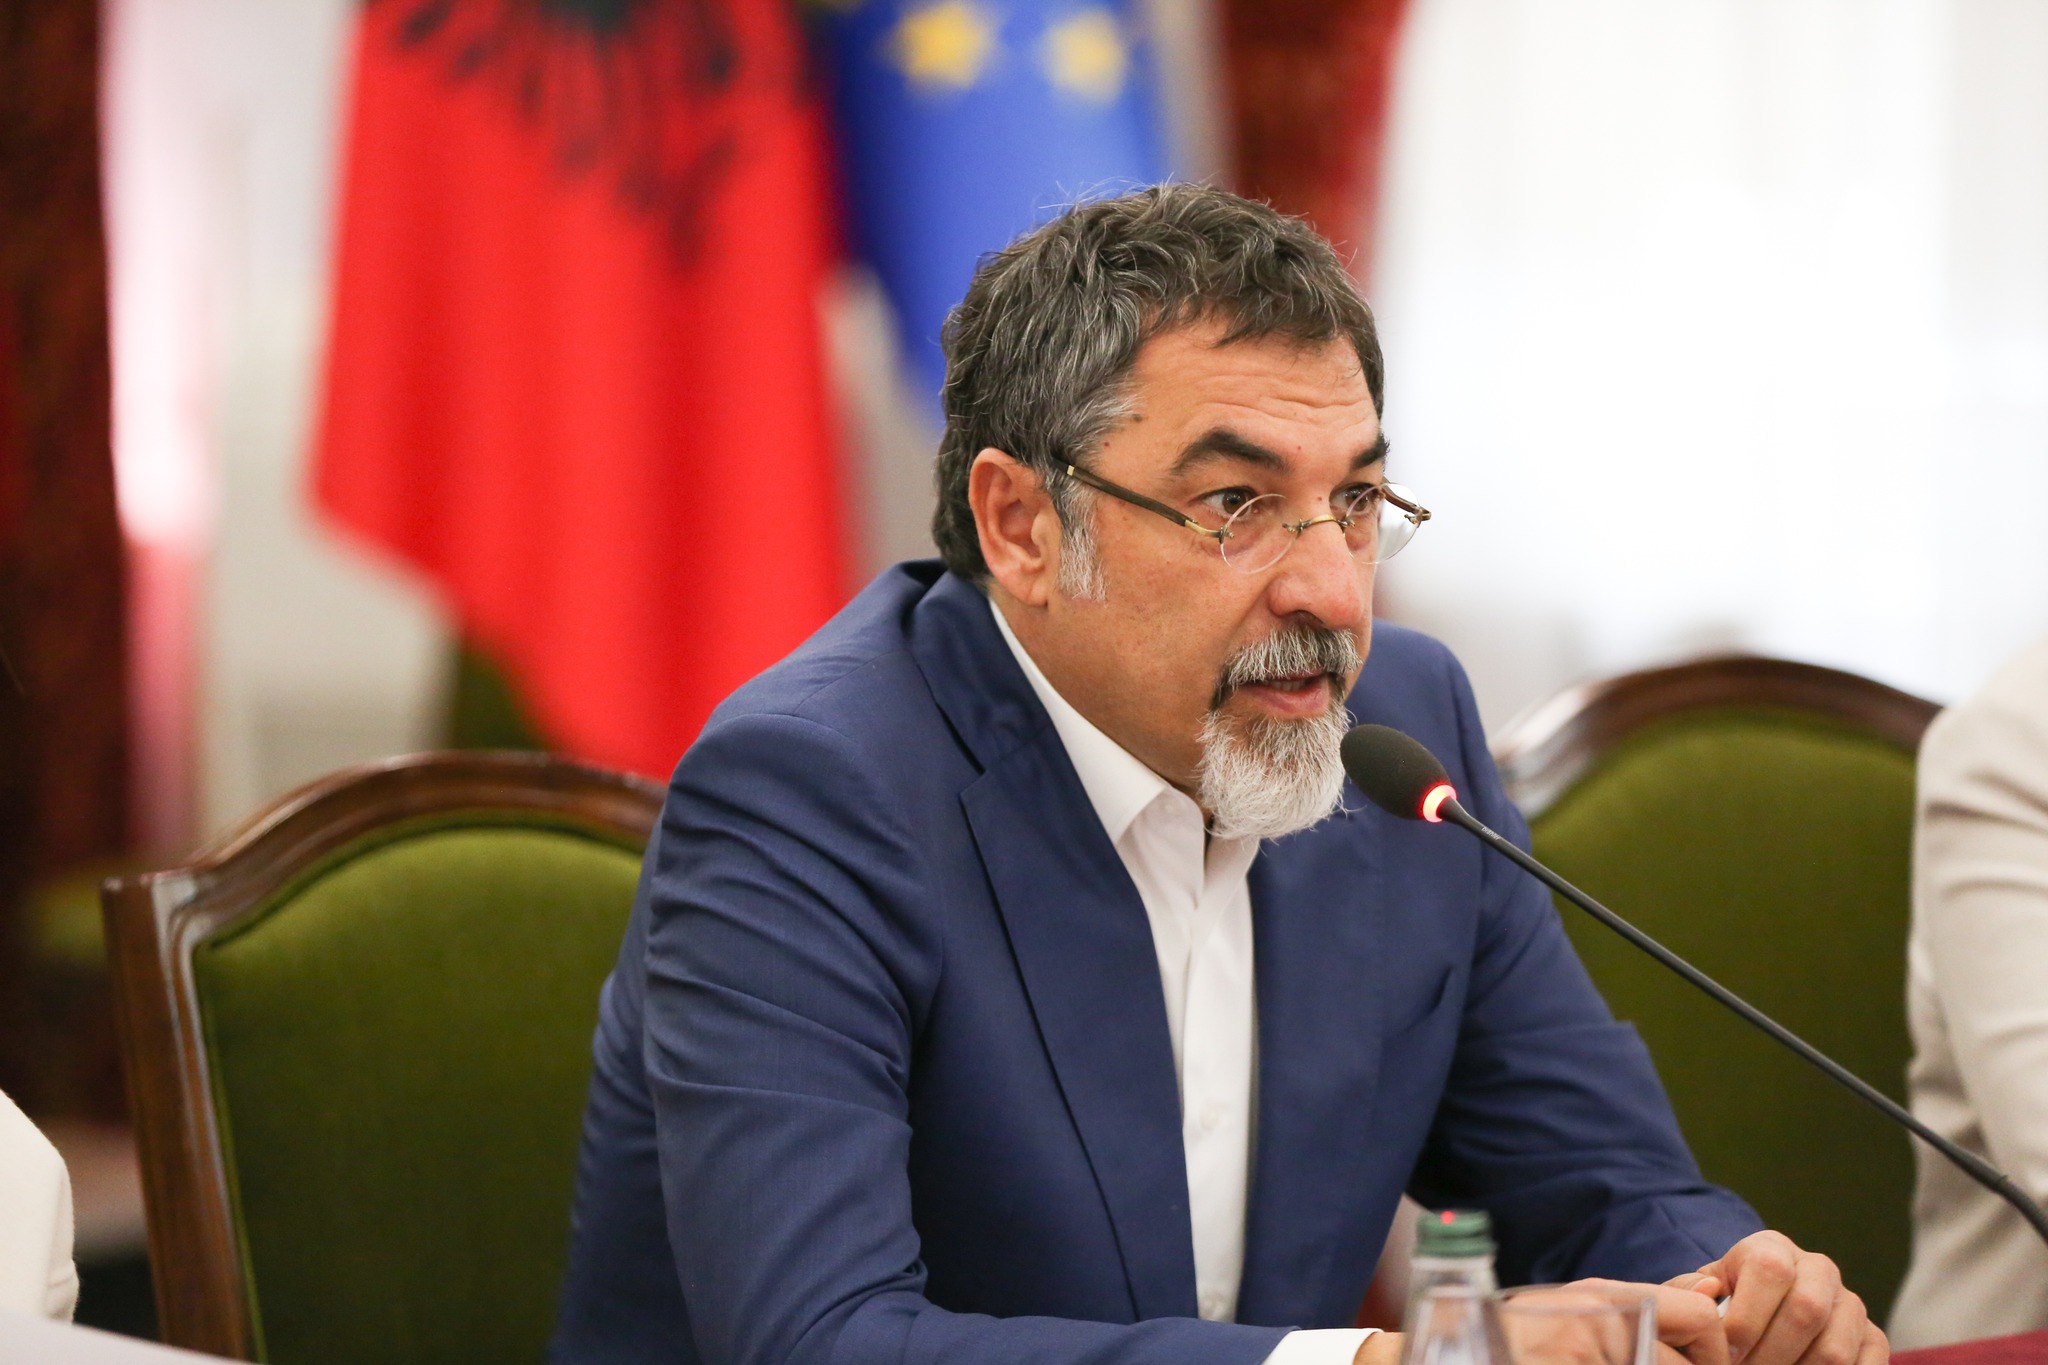 Komisioni për Dezinformimin/ Çuçi: Nuk është për përdorim të brendshëm. Shqipëria s’është imune nga ndërhyrjet e huaja